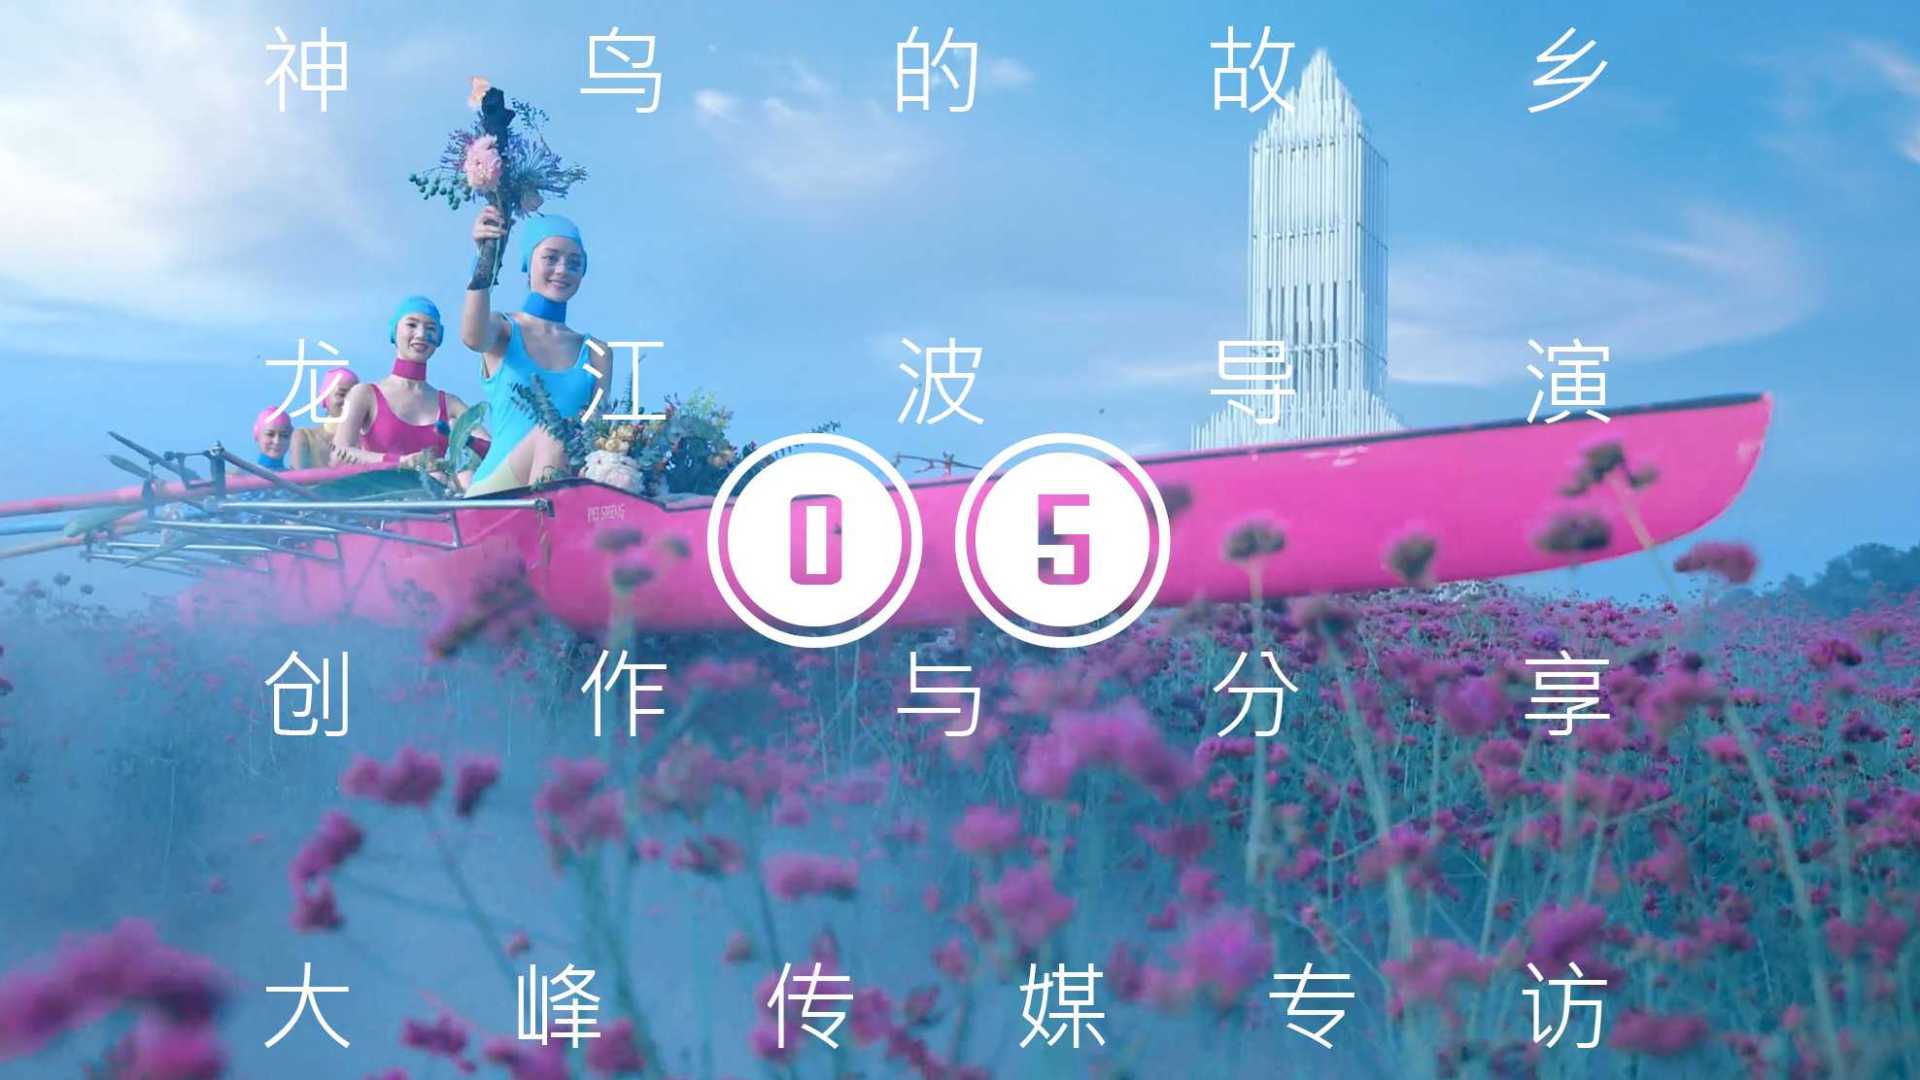 05神鸟的故乡·龙江波导演·创作与分享·大峰传媒专访